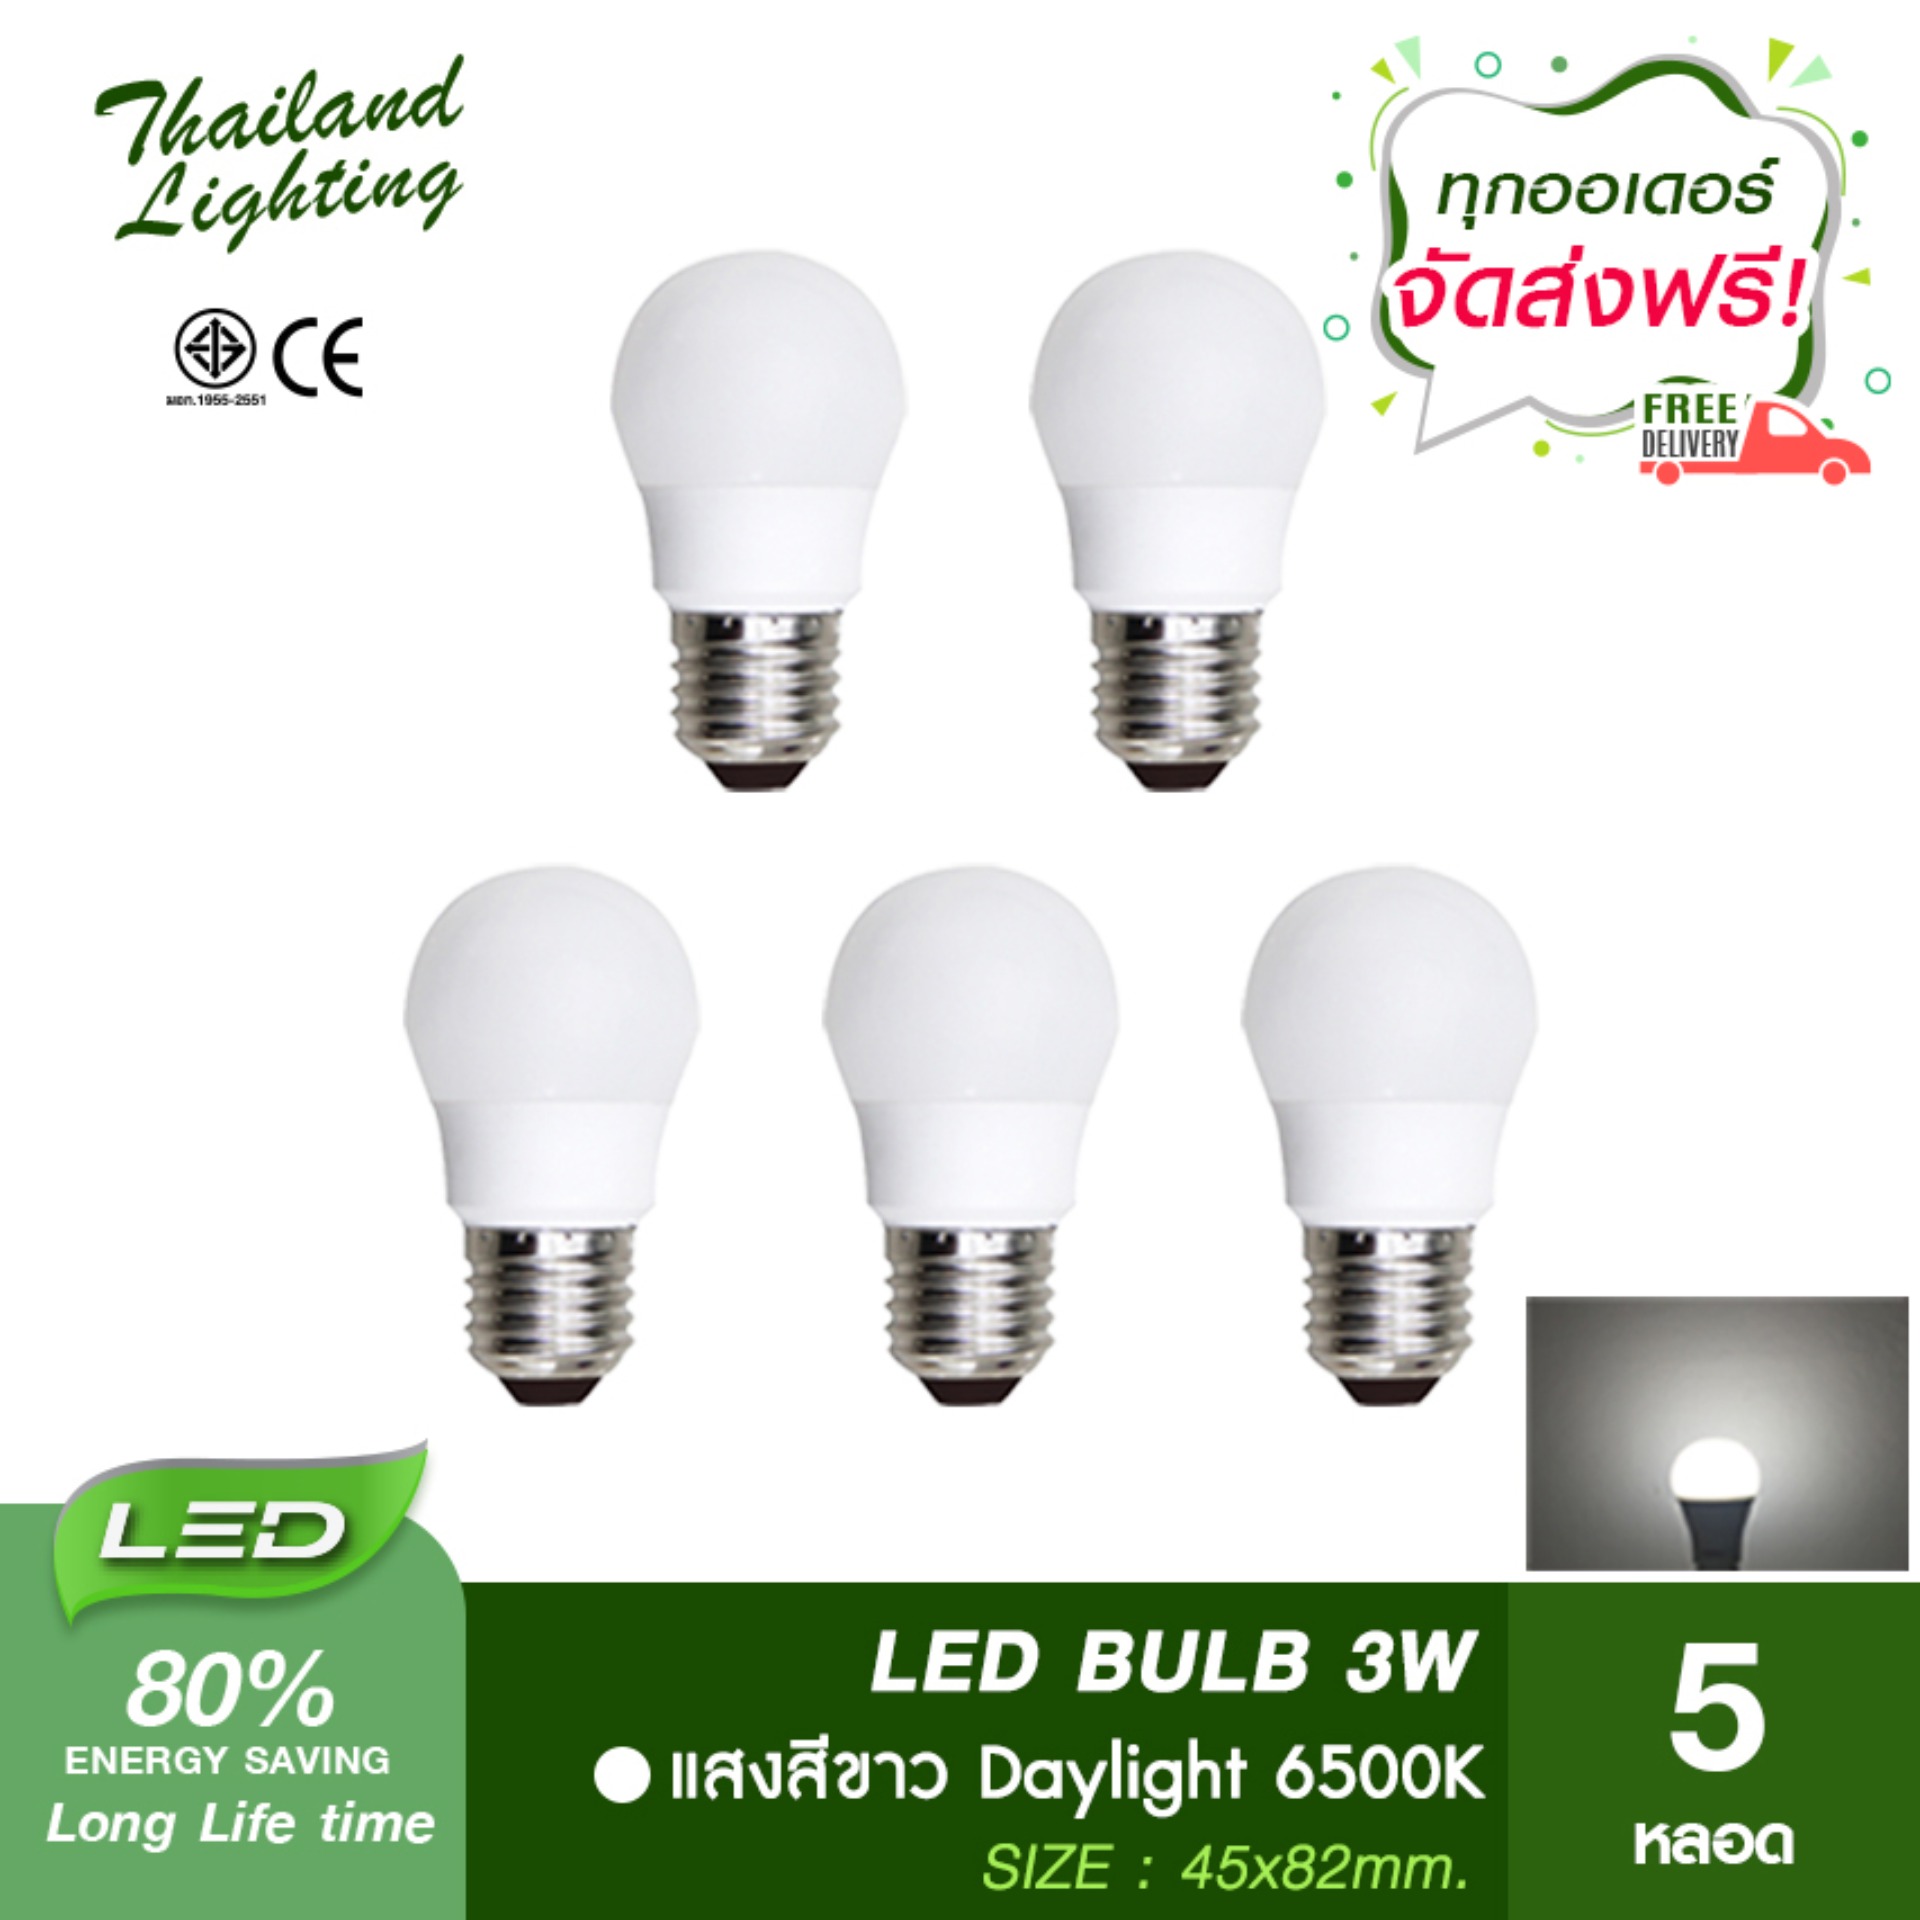 5 หลอด หลอดไฟ LED Bulb 3W ขั้วเกลียว E27 แสงสีขาว Daylight 6500K แสงสี วอร์ม Warm White 3000K Thailand Lighting หลอดไฟแอลอีดี Bulb หลอดปิงปอง ใช้ไฟบ้าน 220V V Special VSC